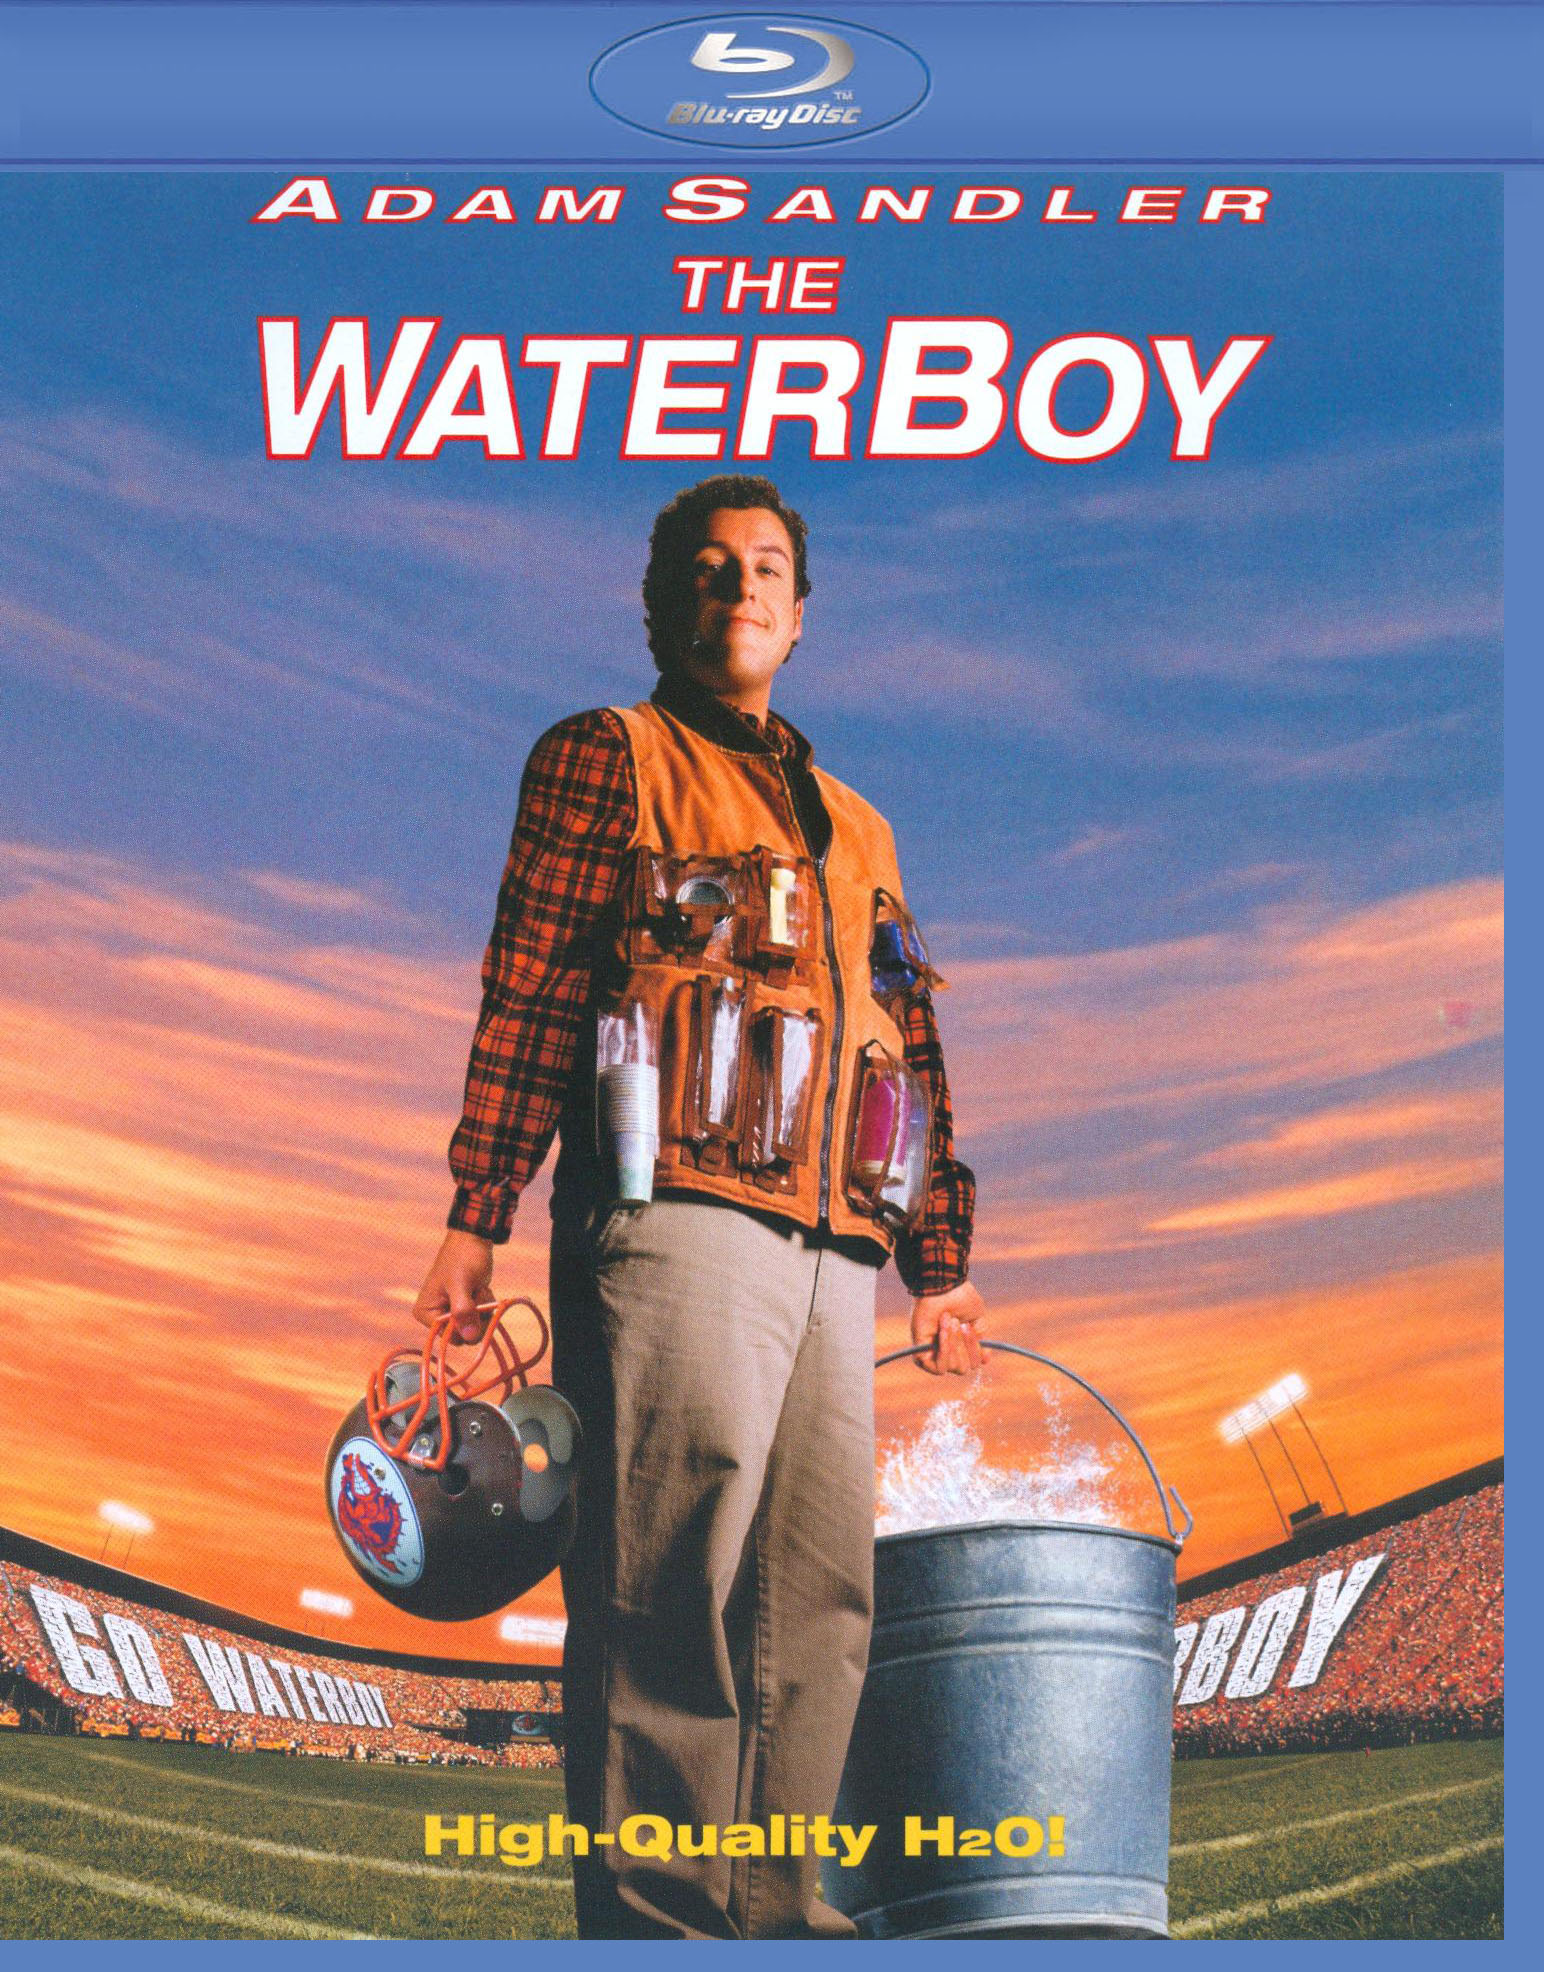 The Waterboy [Blu-ray] [1998] - Best Buy $2.99 at Bestbuy